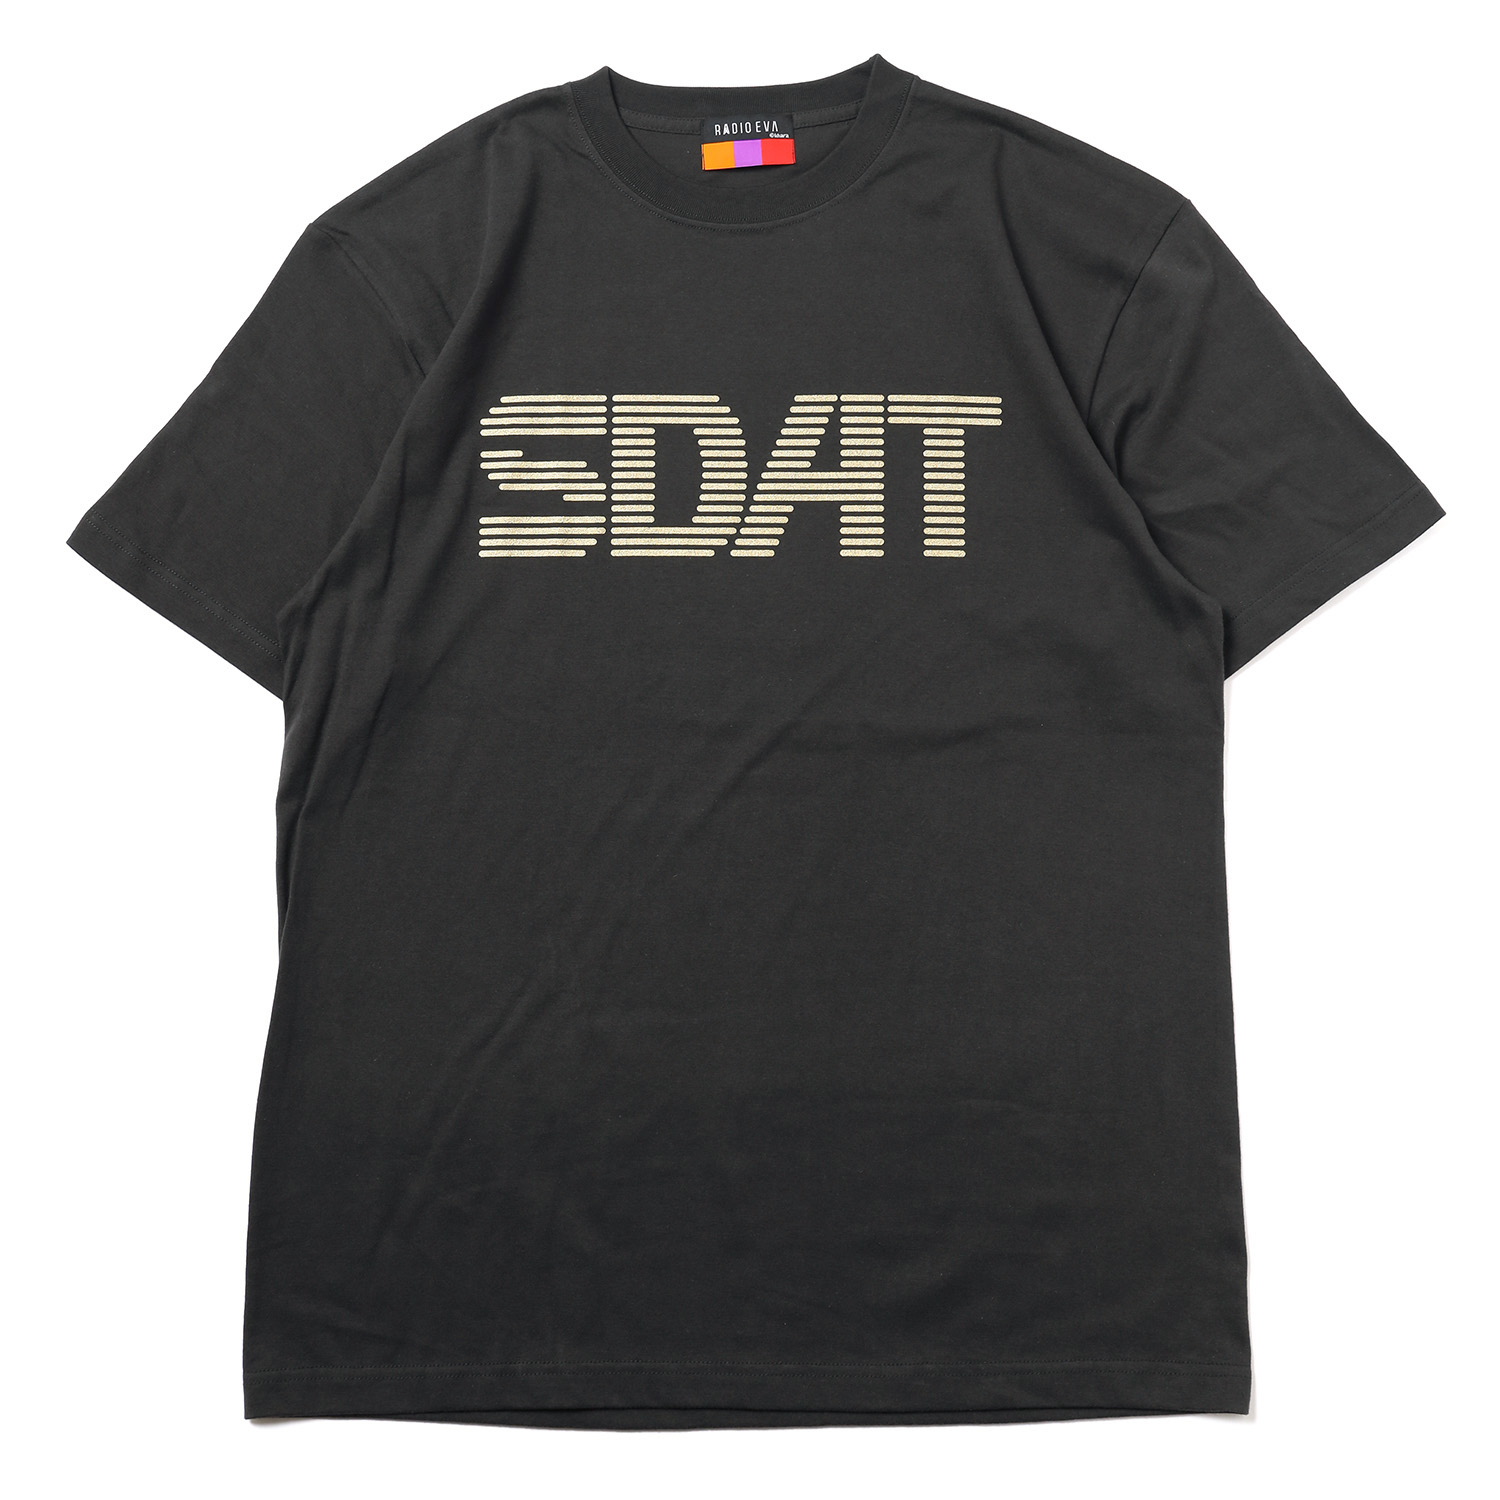 RADIO EVA A022 SDAT 27 T-Shirt β